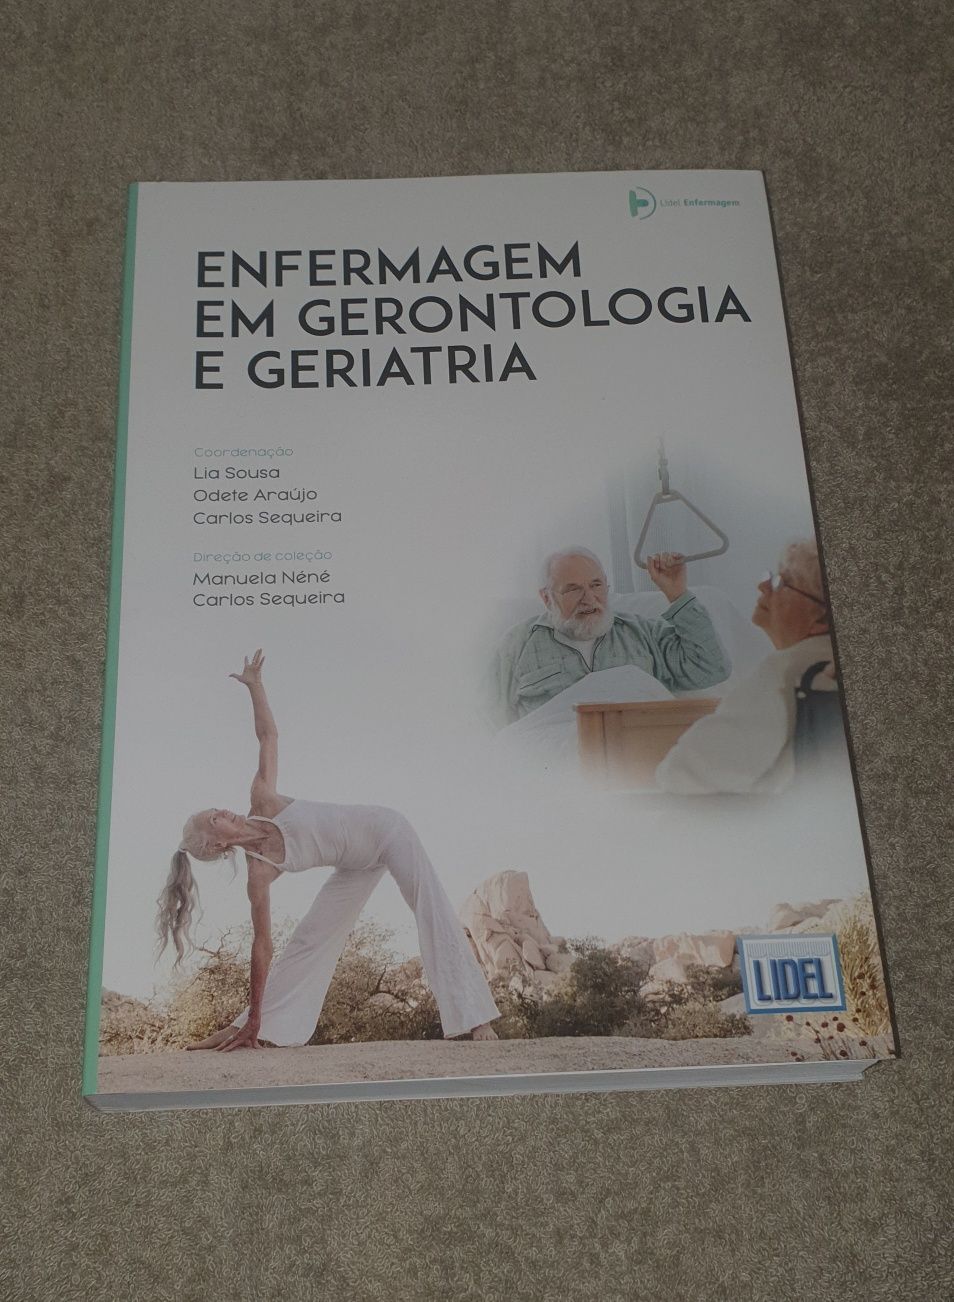 Enfermagem em gerontologia e geriatria